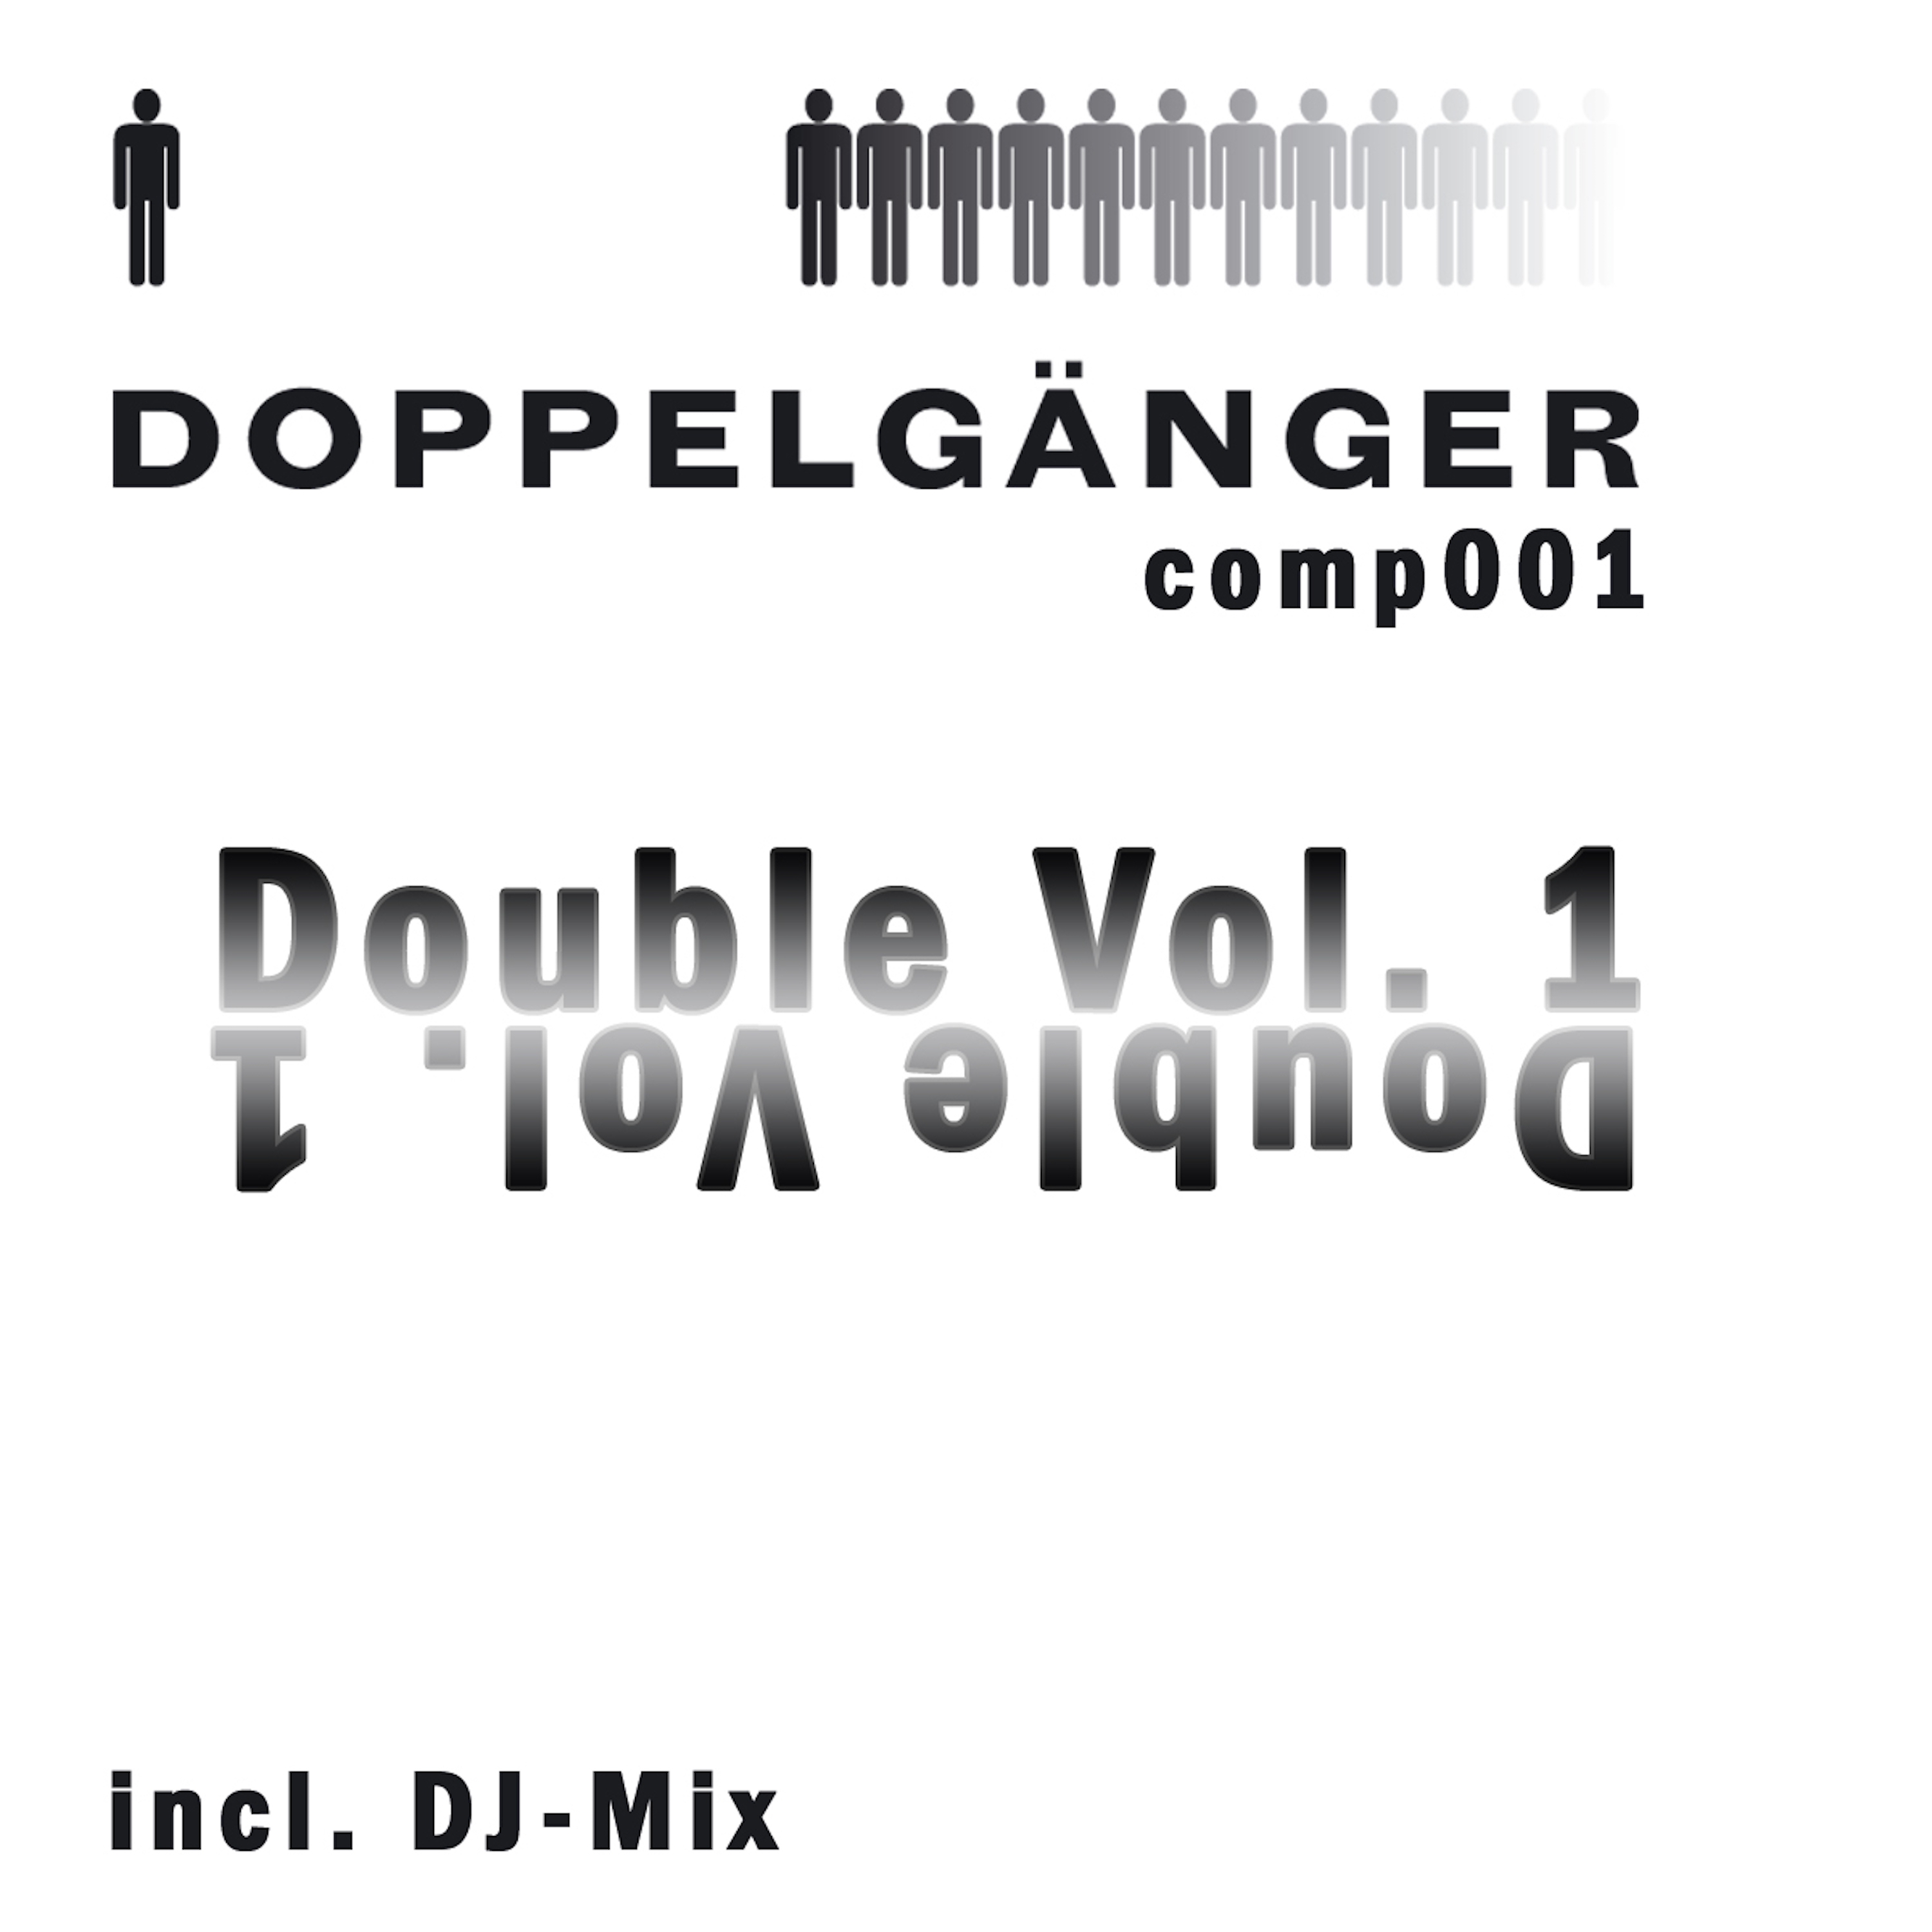 Double Vol. 1